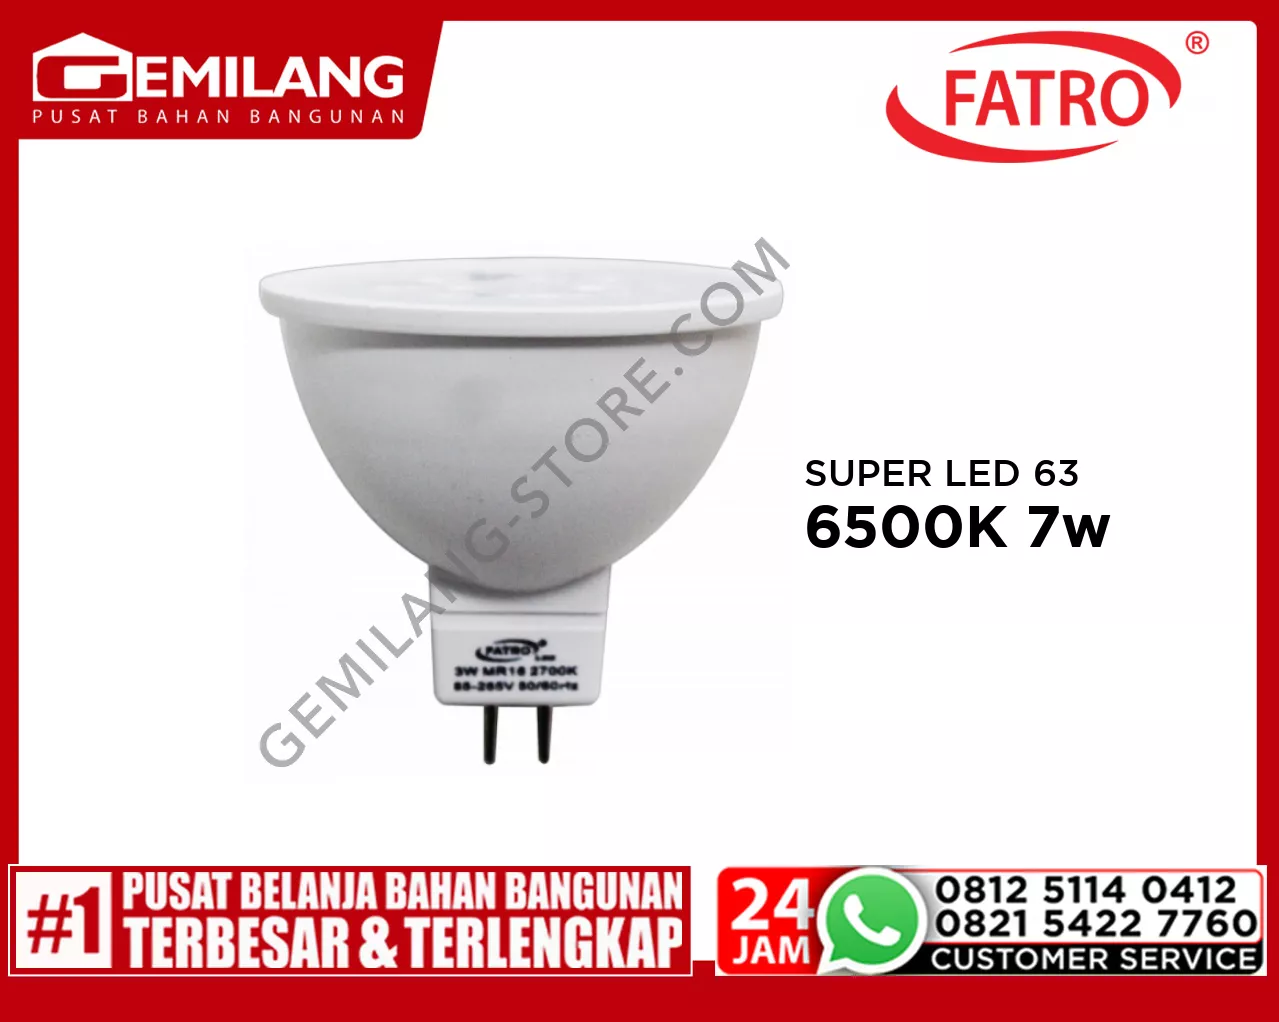 FATRO SUPER LED 60 MR16 220v 6500K 7w